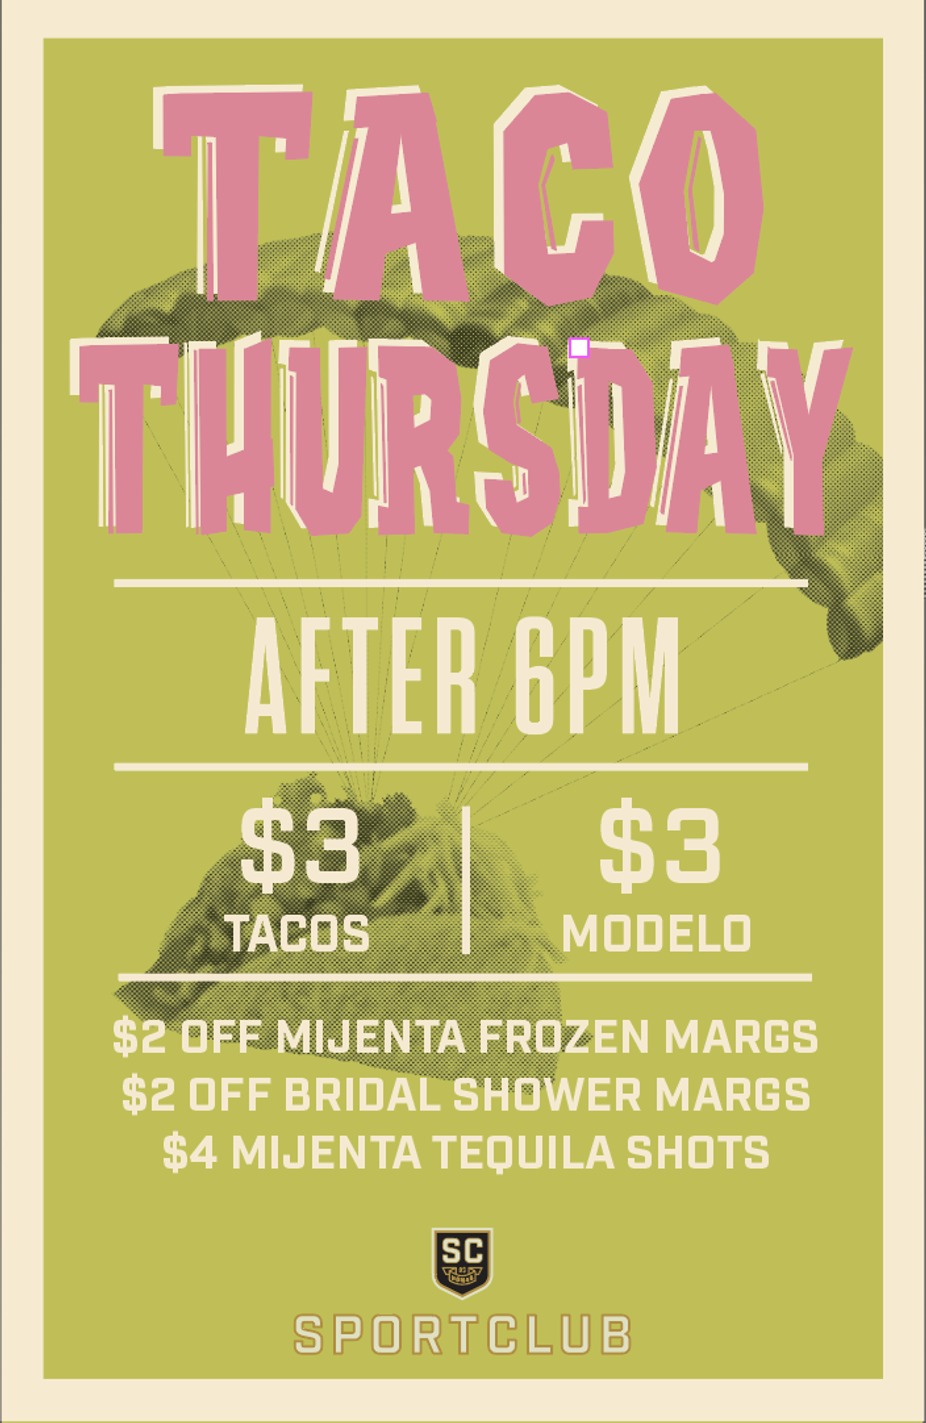 Taco Thursdays event photo